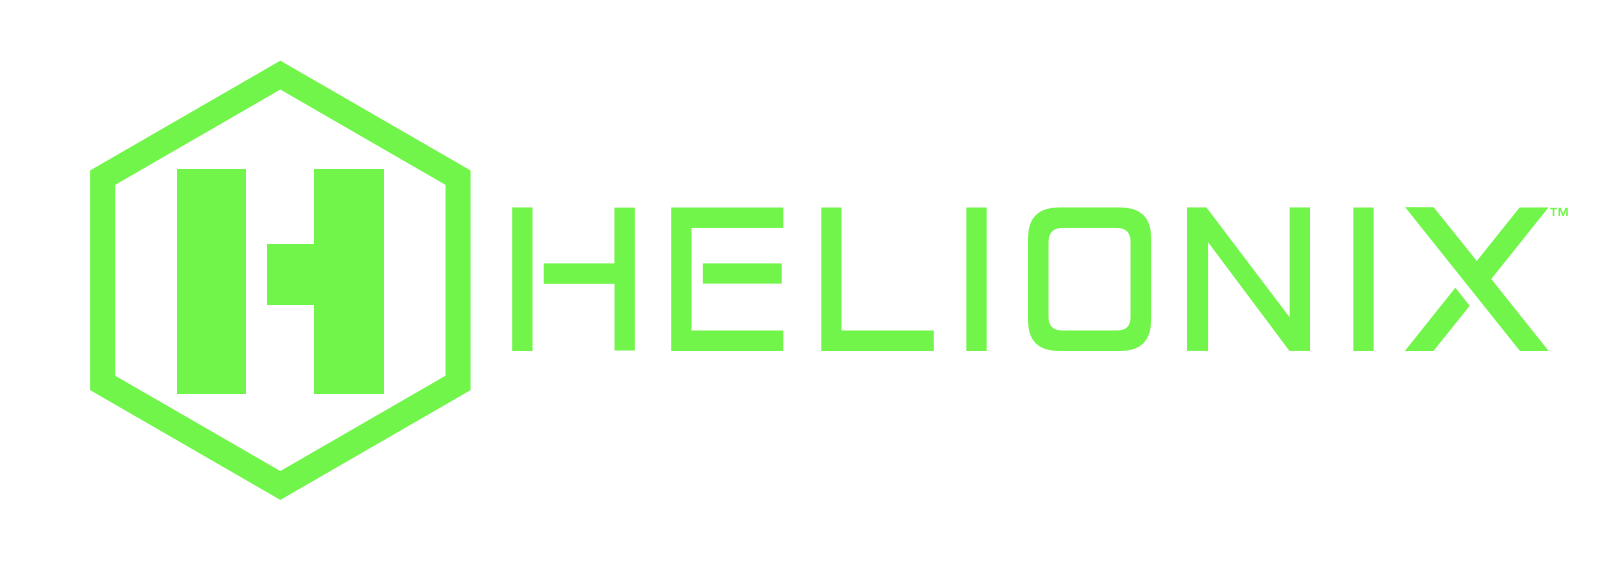 HELIOPONIX logo